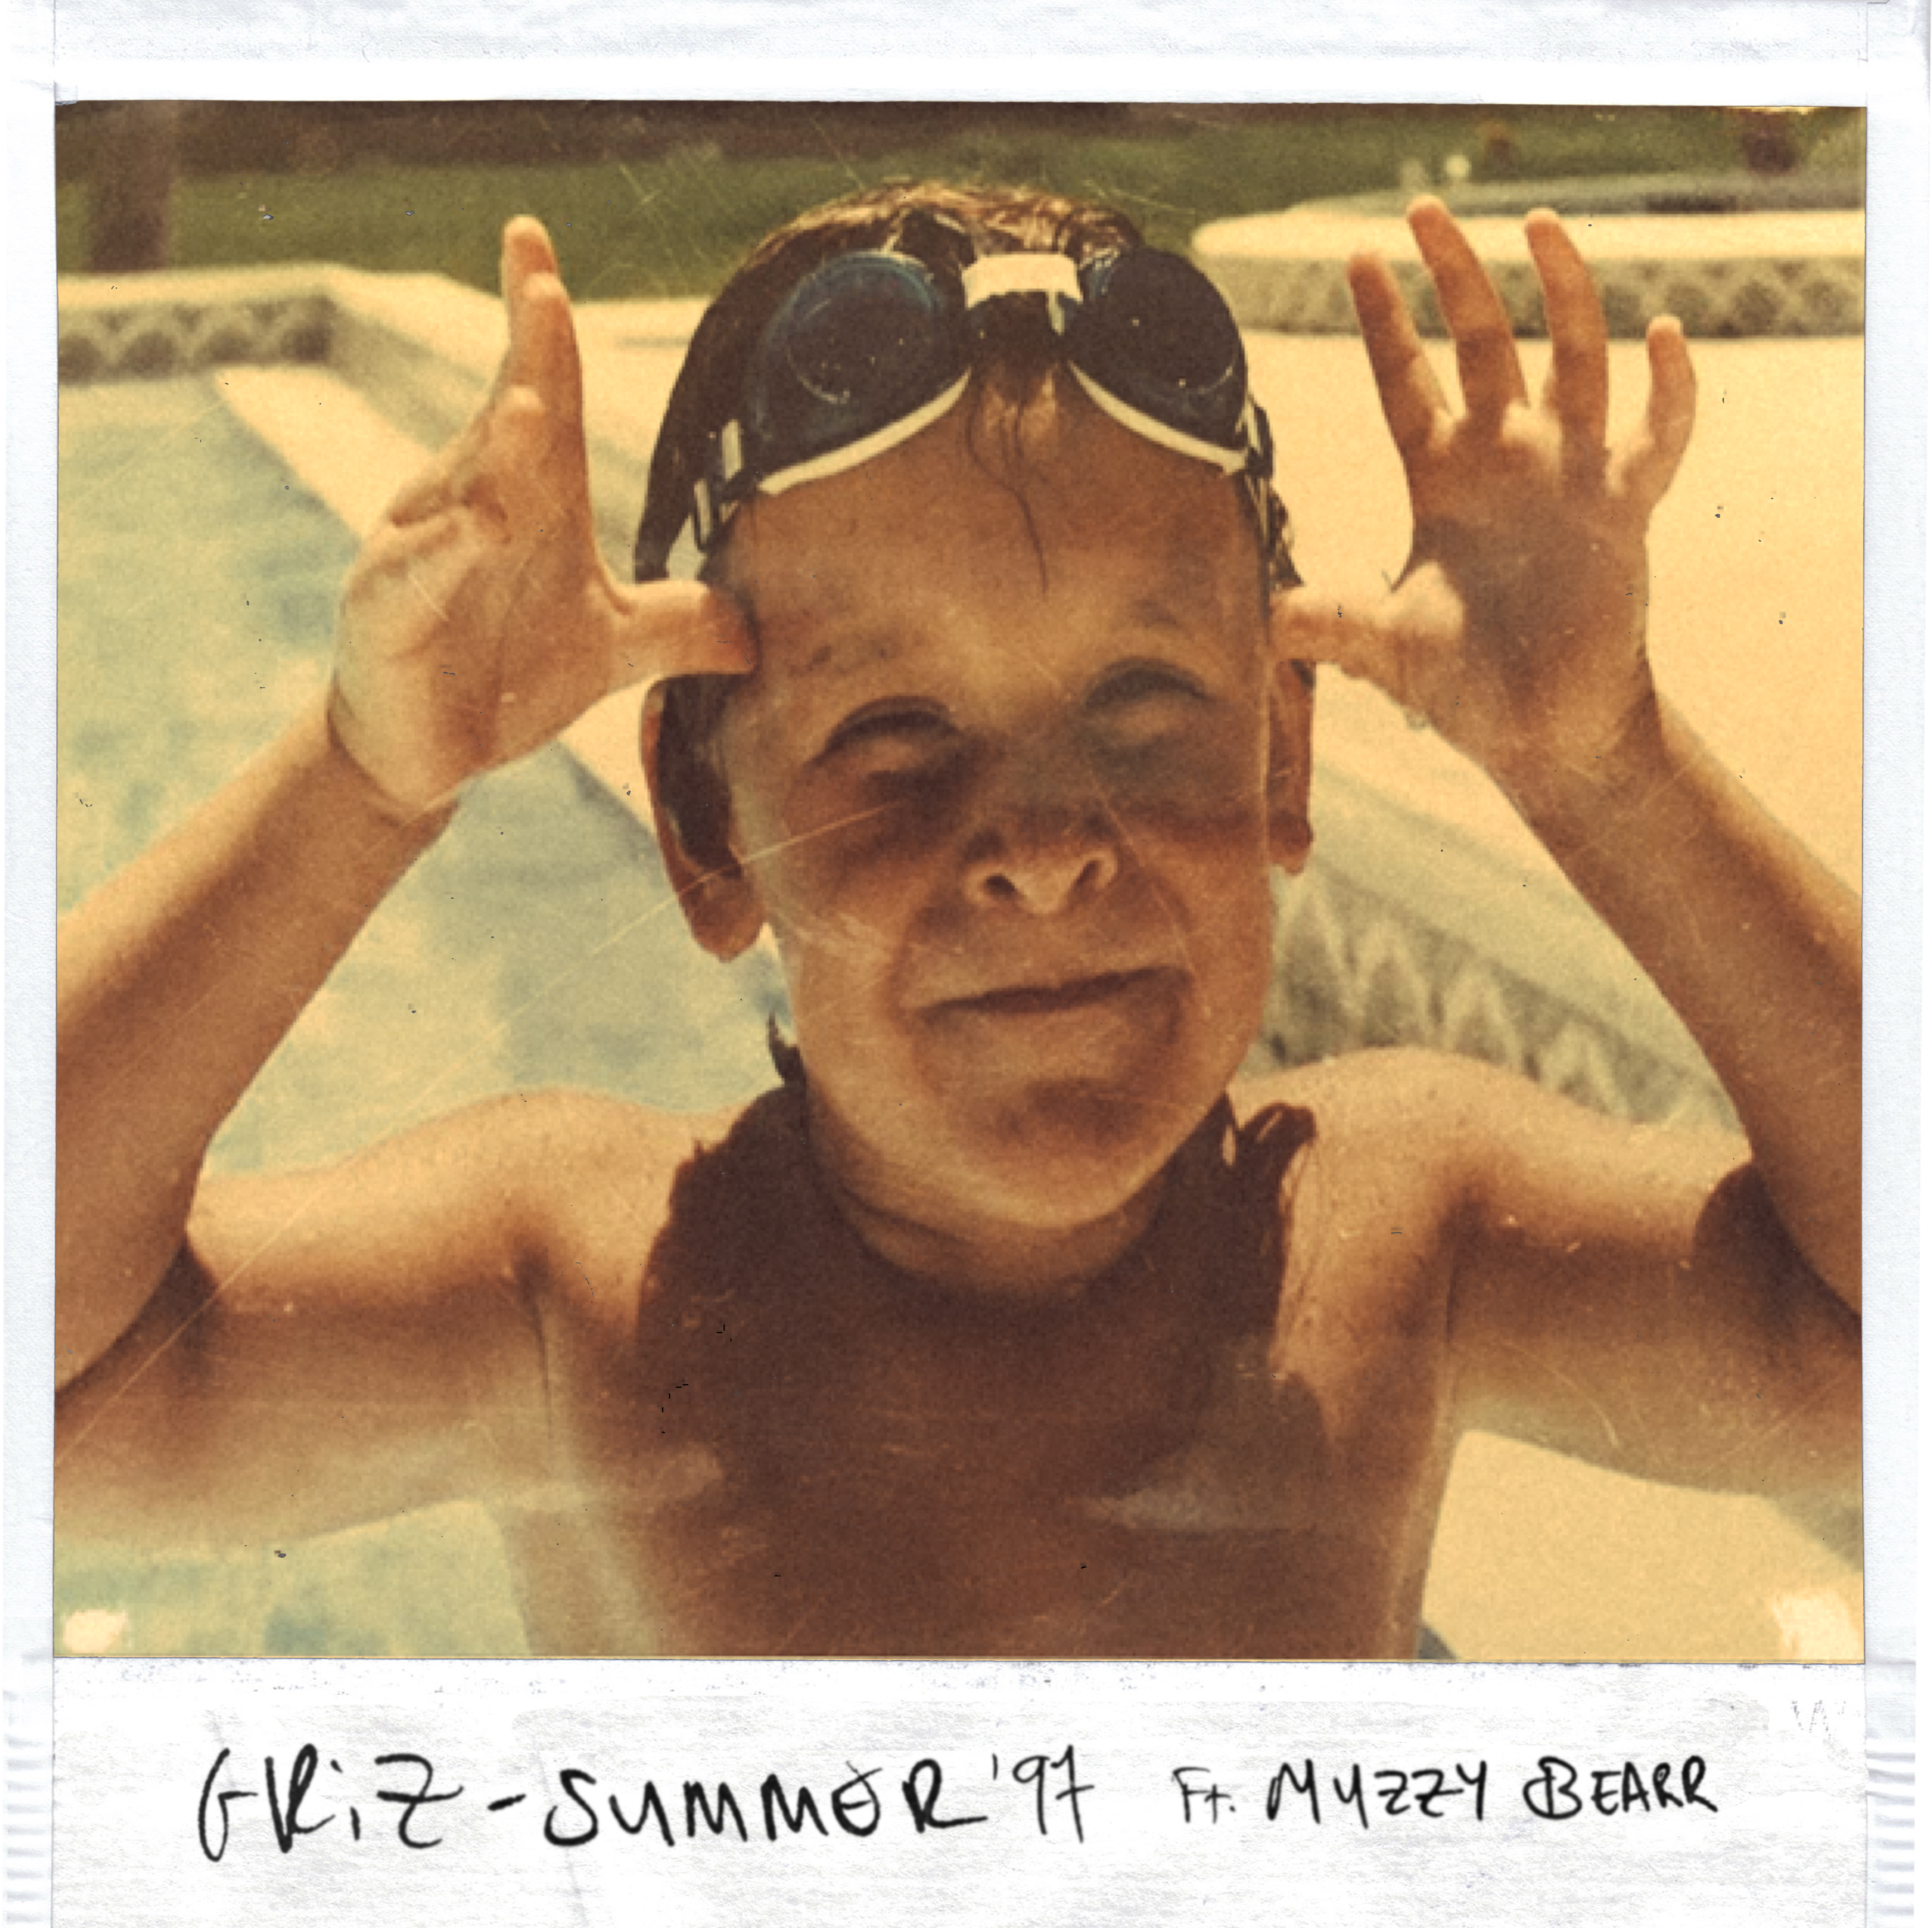 İndirmek Summer '97 ft. Muzzy Bearr